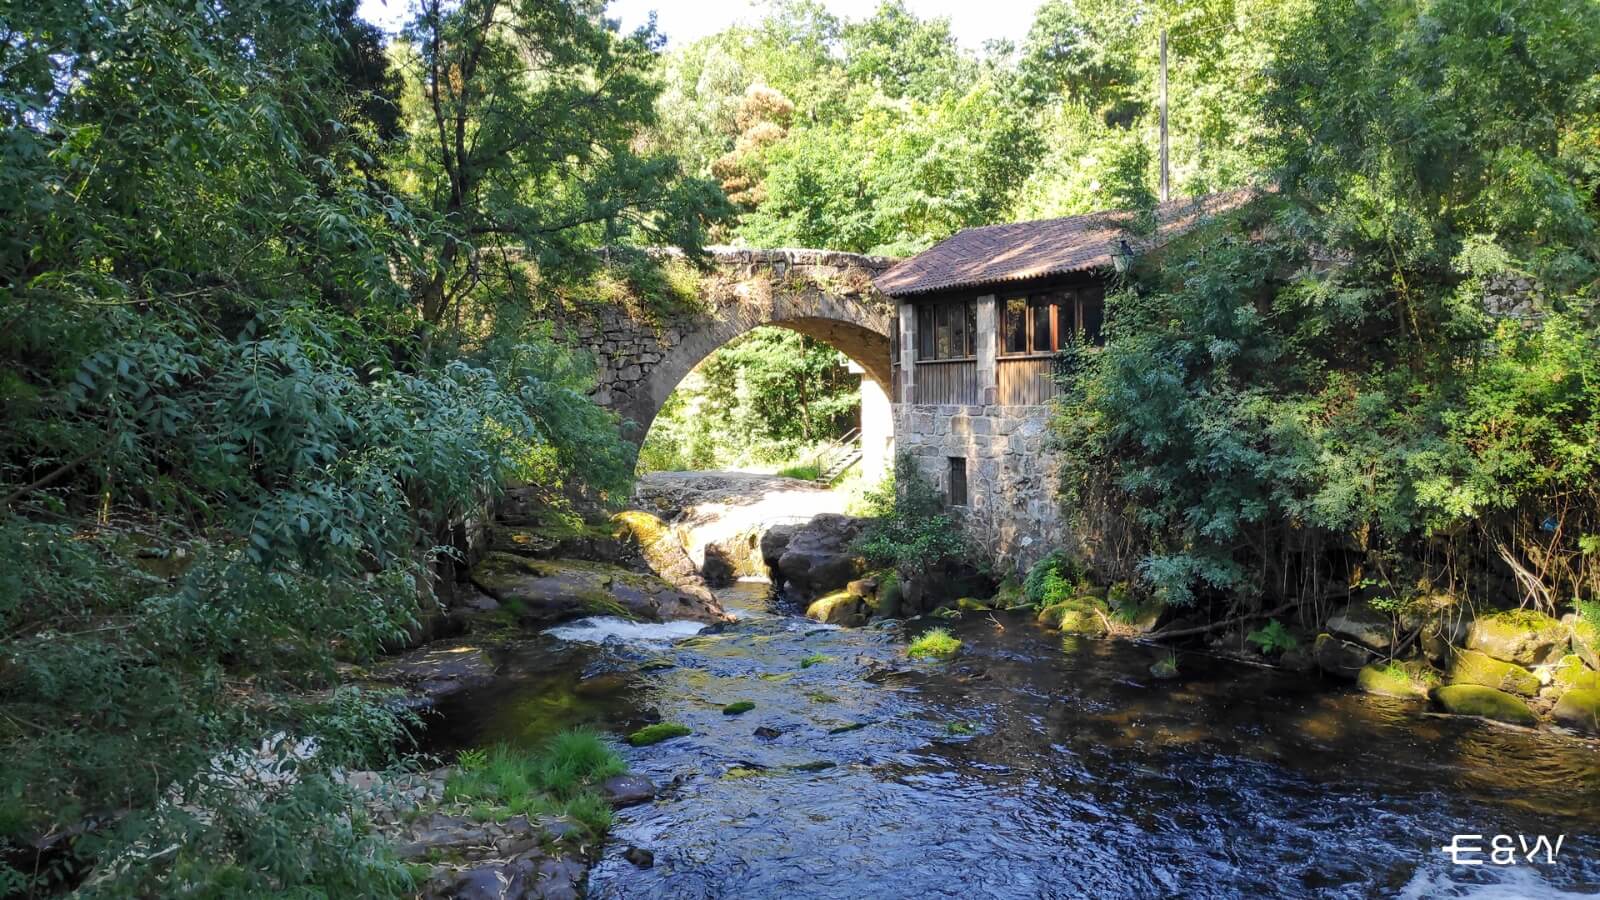 Los 8 mejores sitios que visitar en Galicia - 5. Arbo